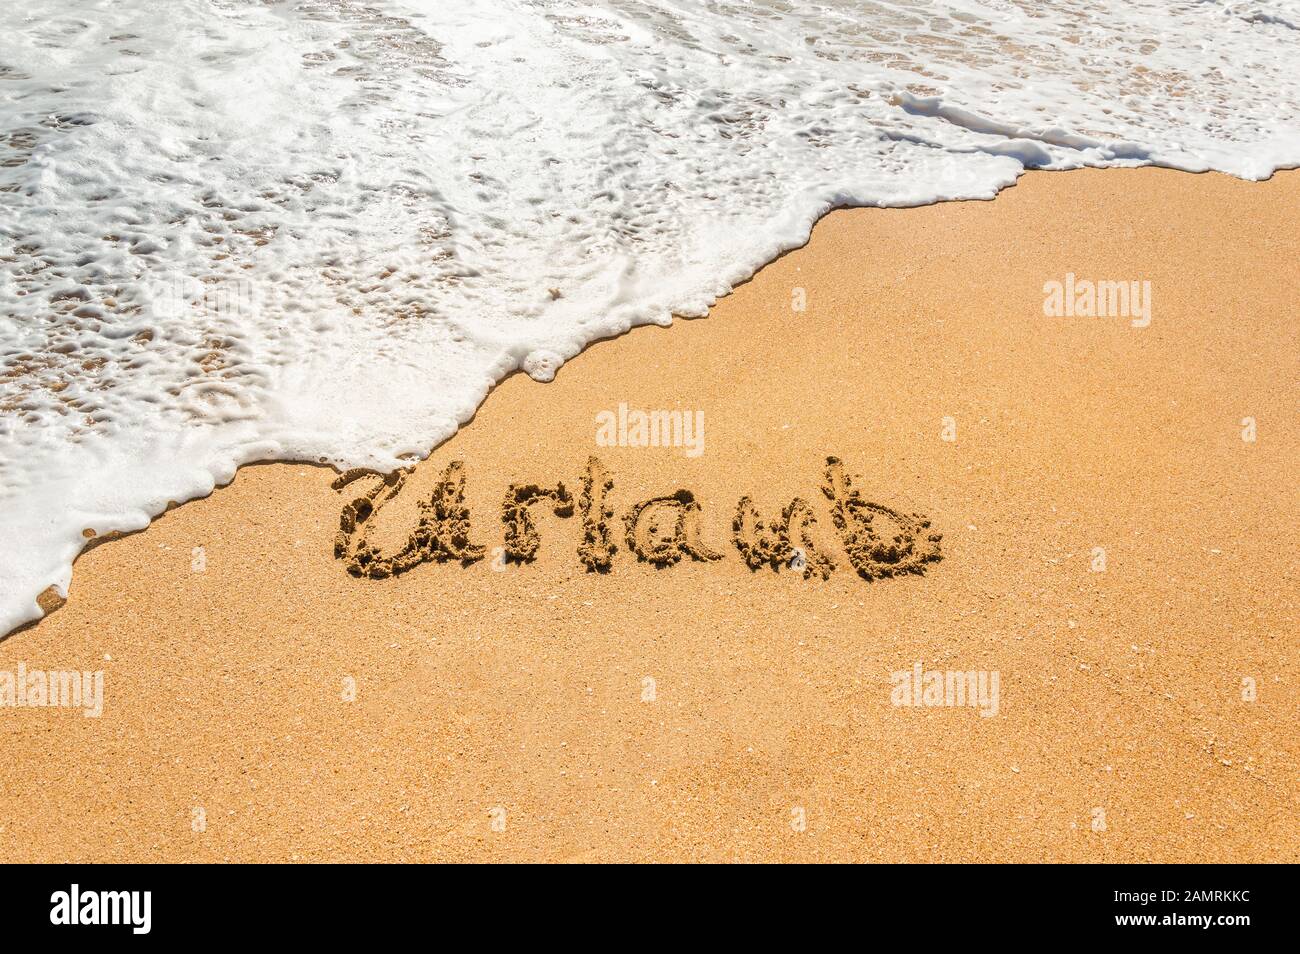 Texte écrit à la main en allemand Urlaub (vacances de traduction en anglais) sur la plage de sable doré avec la vague à venir. Concept de vacances d'été et de vacances Banque D'Images